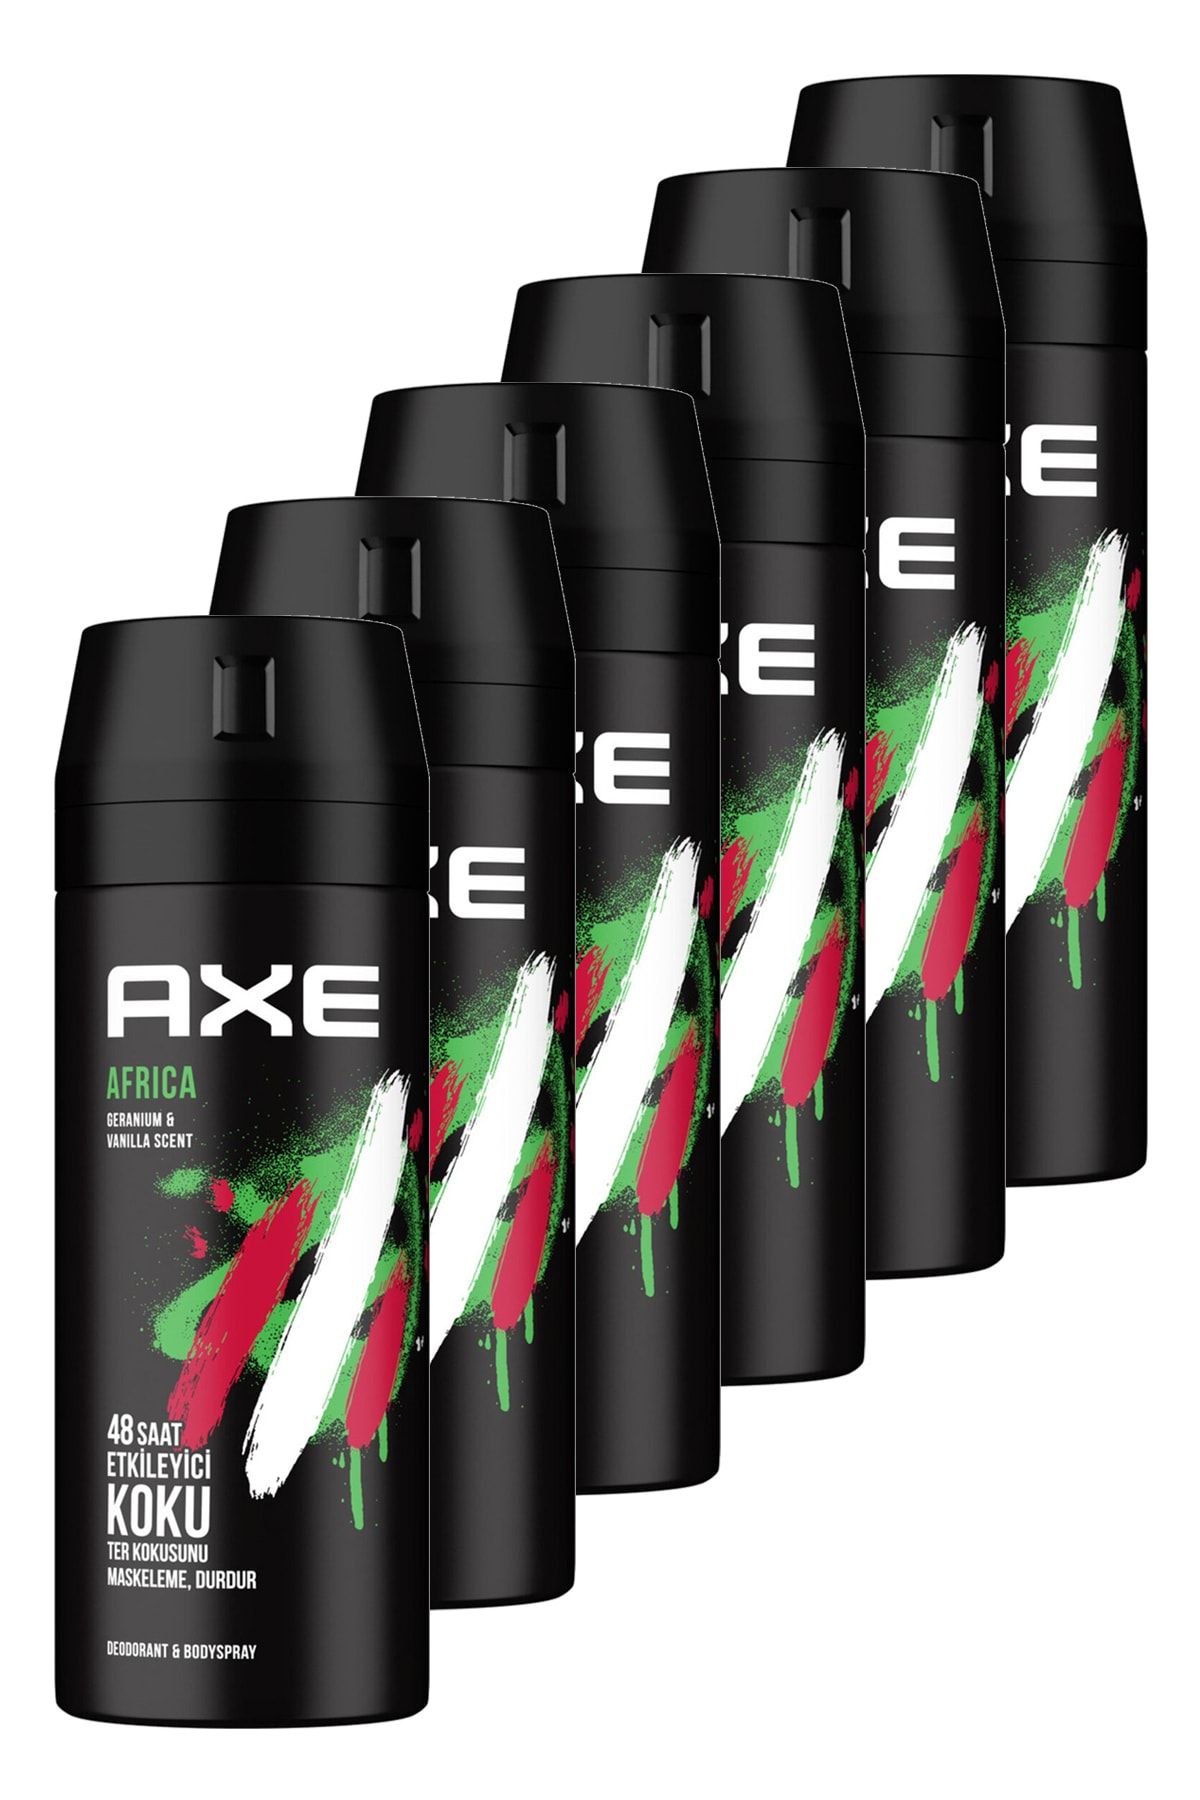 Axe Africa Erkek Deodorant 150 Ml. Altılı Set UNI68480228-6